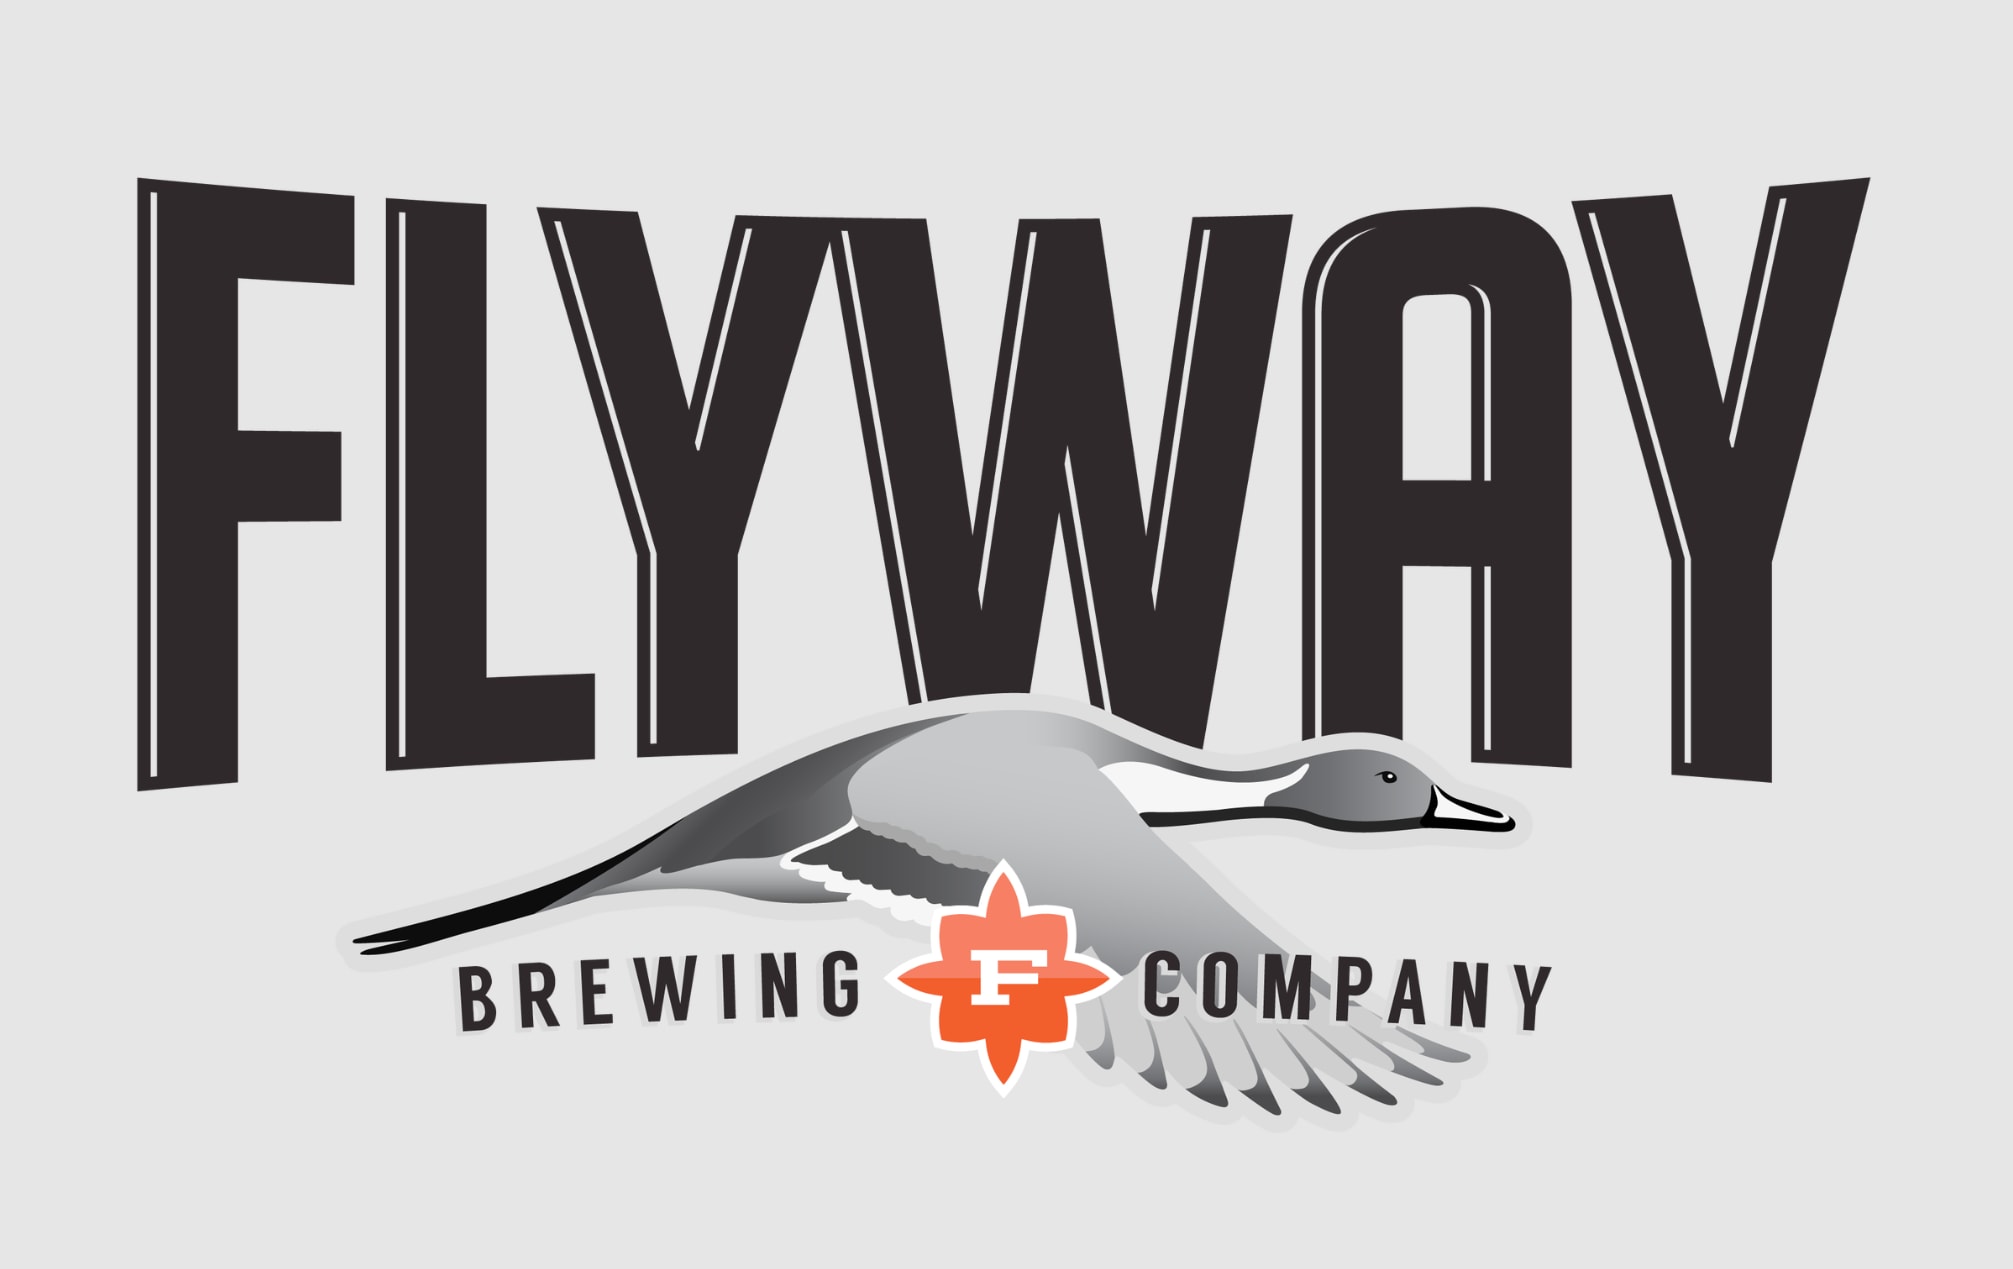 Flyway Brewing logo